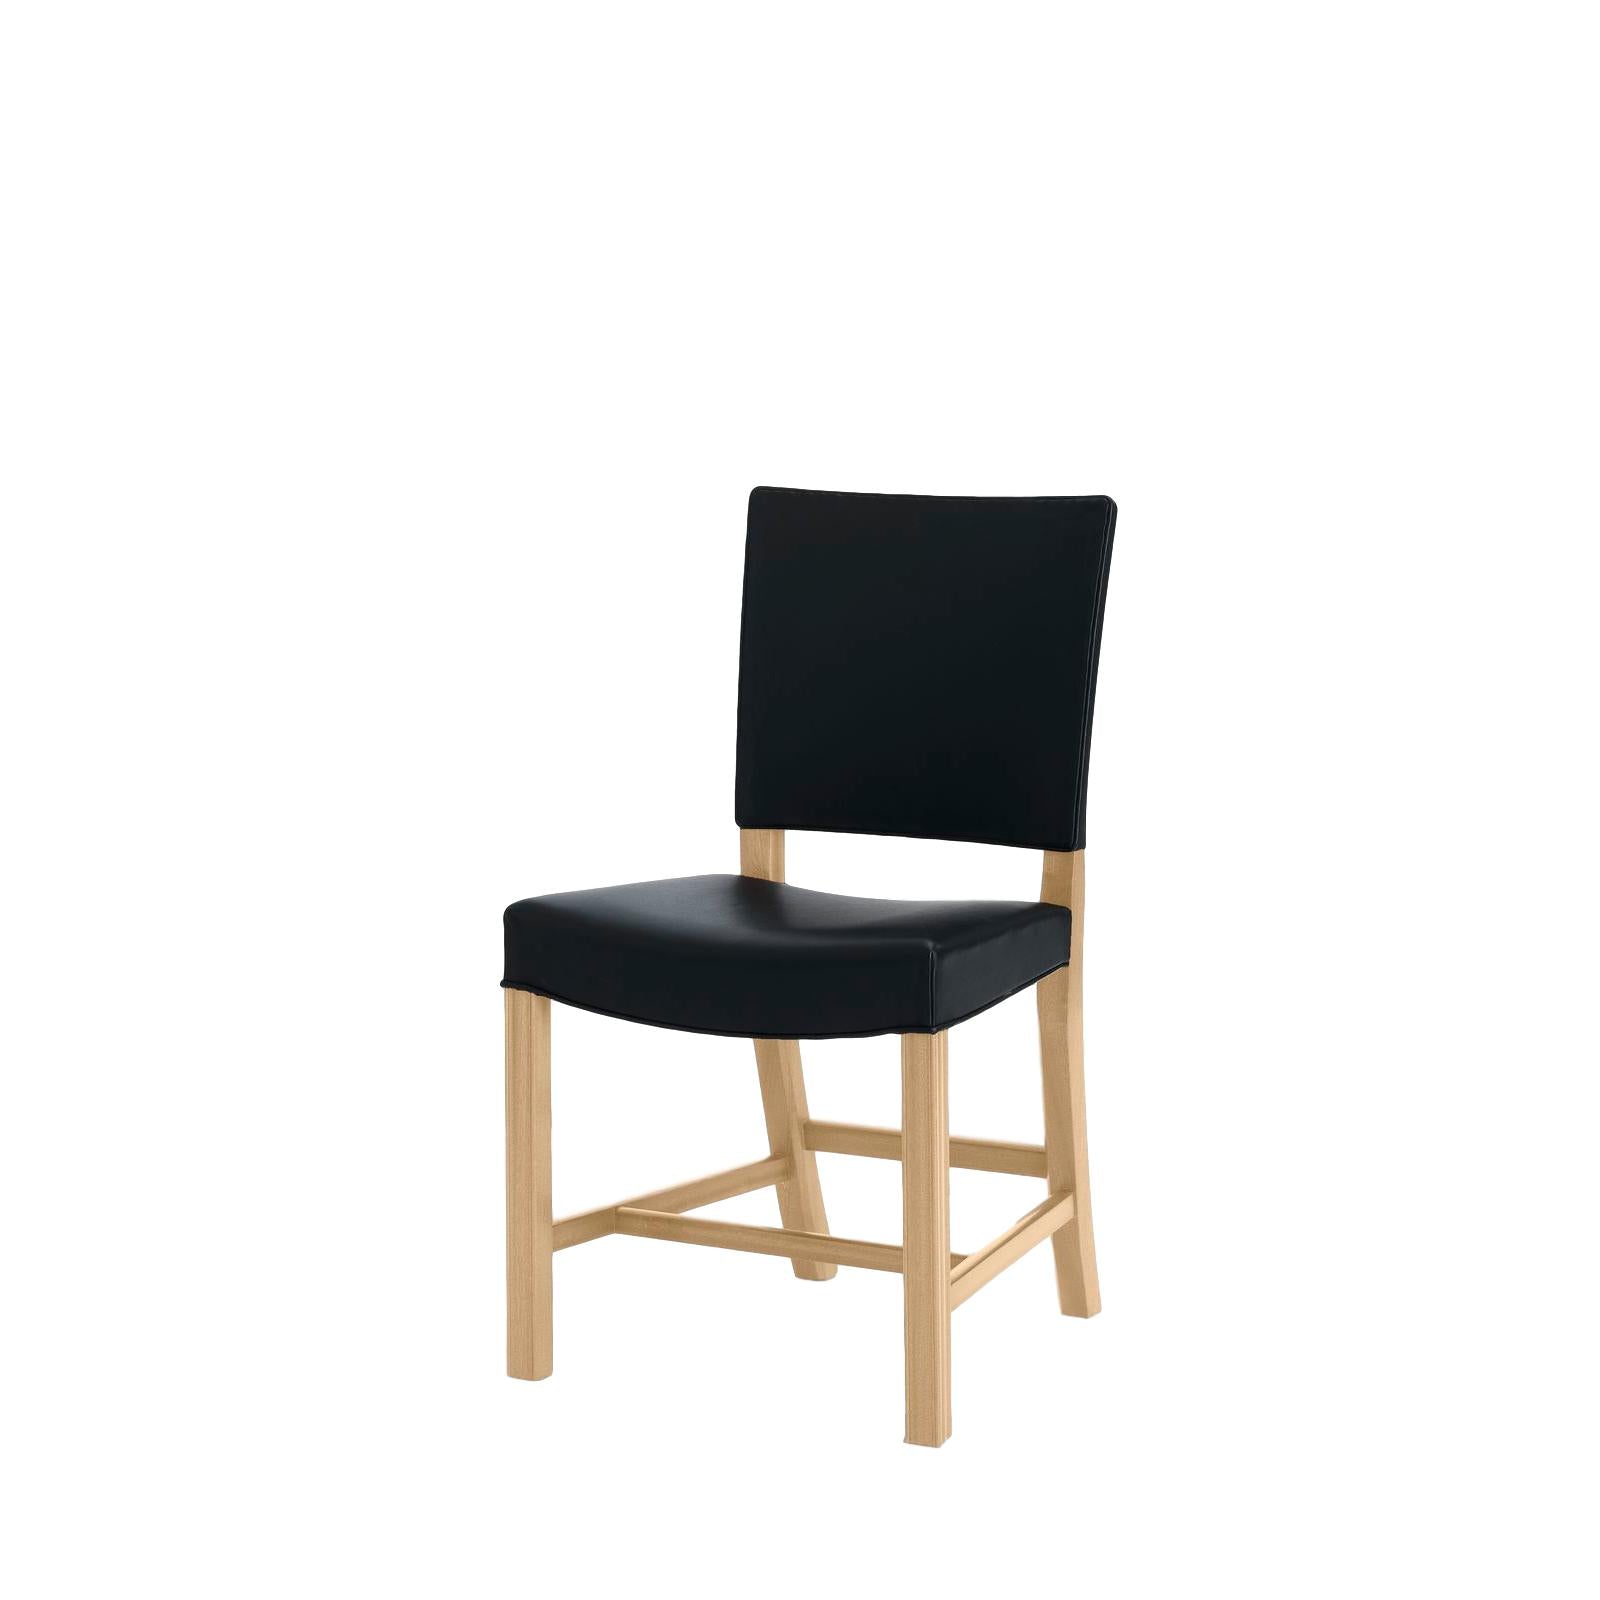 Carl Hansen KK37580 Duże czerwone krzesło, dębowa skóra dębowa/czarna